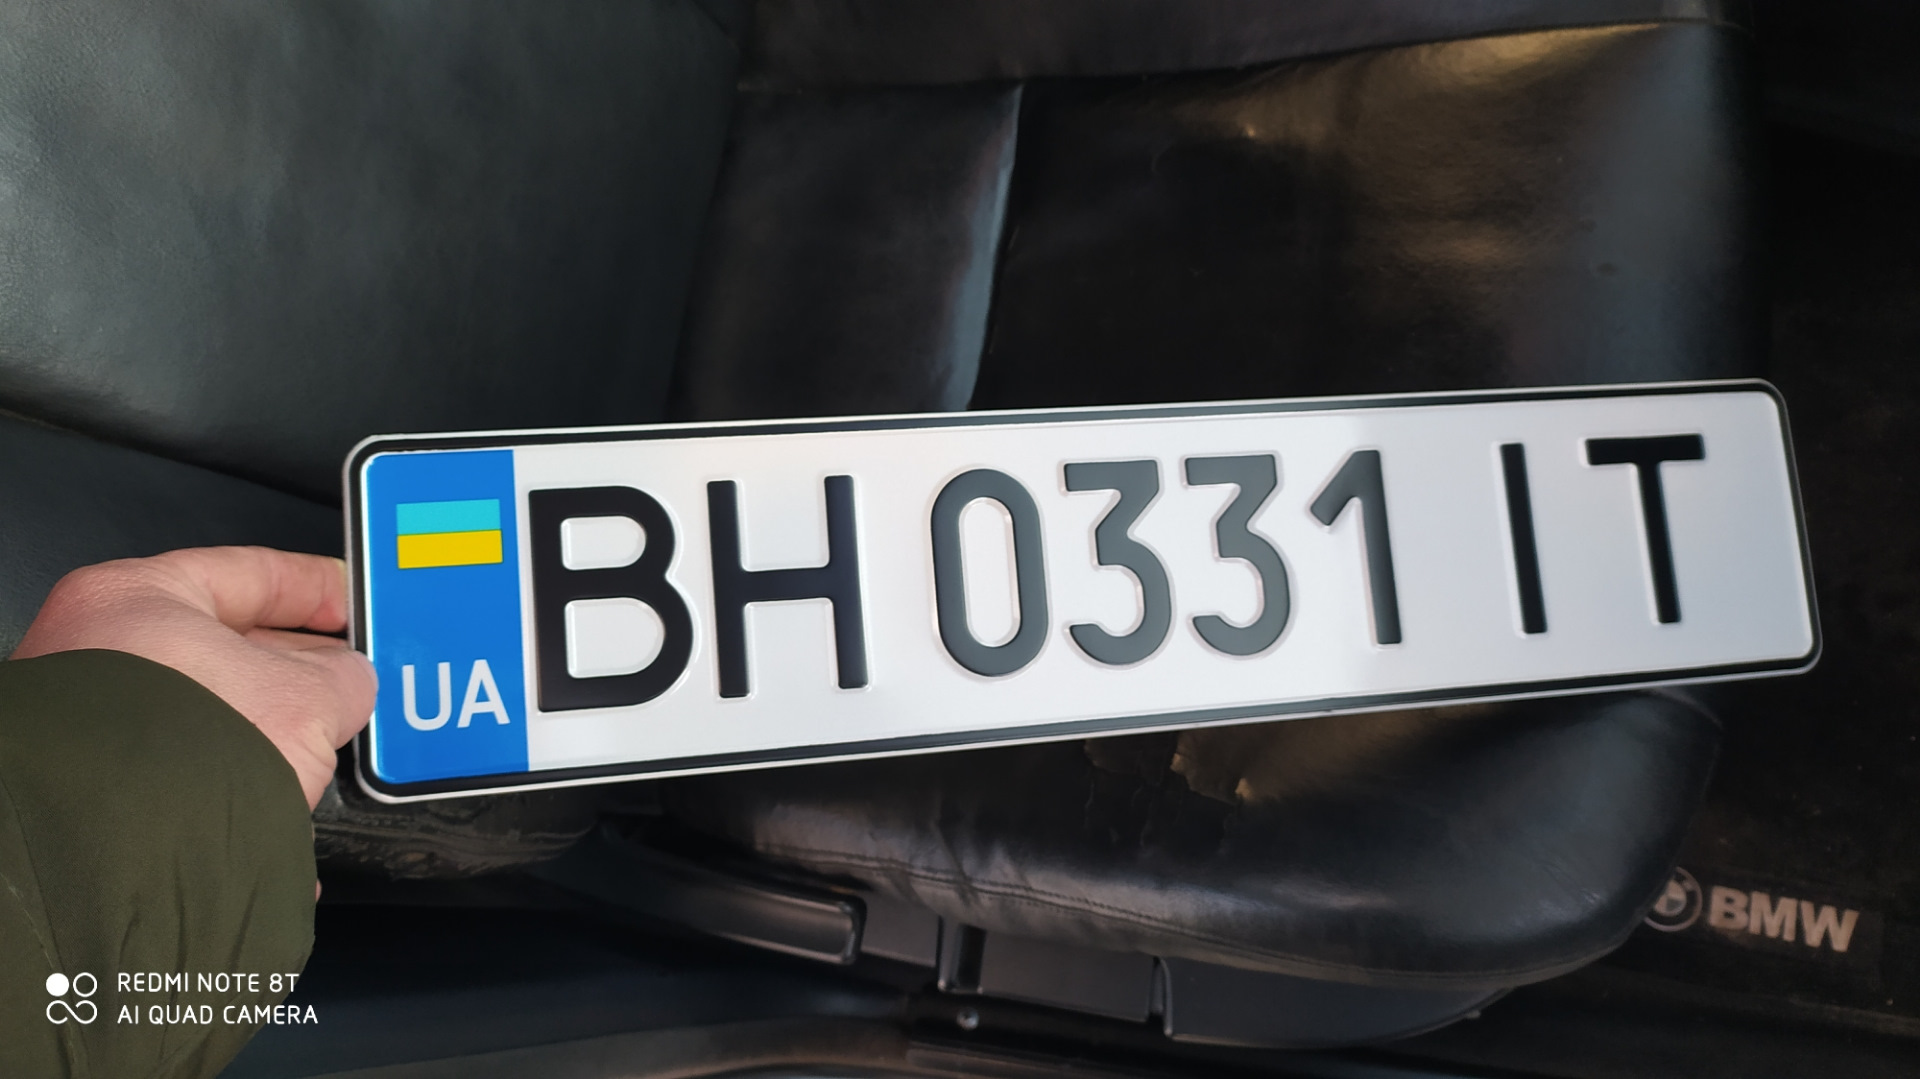 Как переоформить гос номер. Прикольные номерные знаки. БМВ на армянских номерах. BMW C номером 232 xdx с значком Евросоюза Вологда.